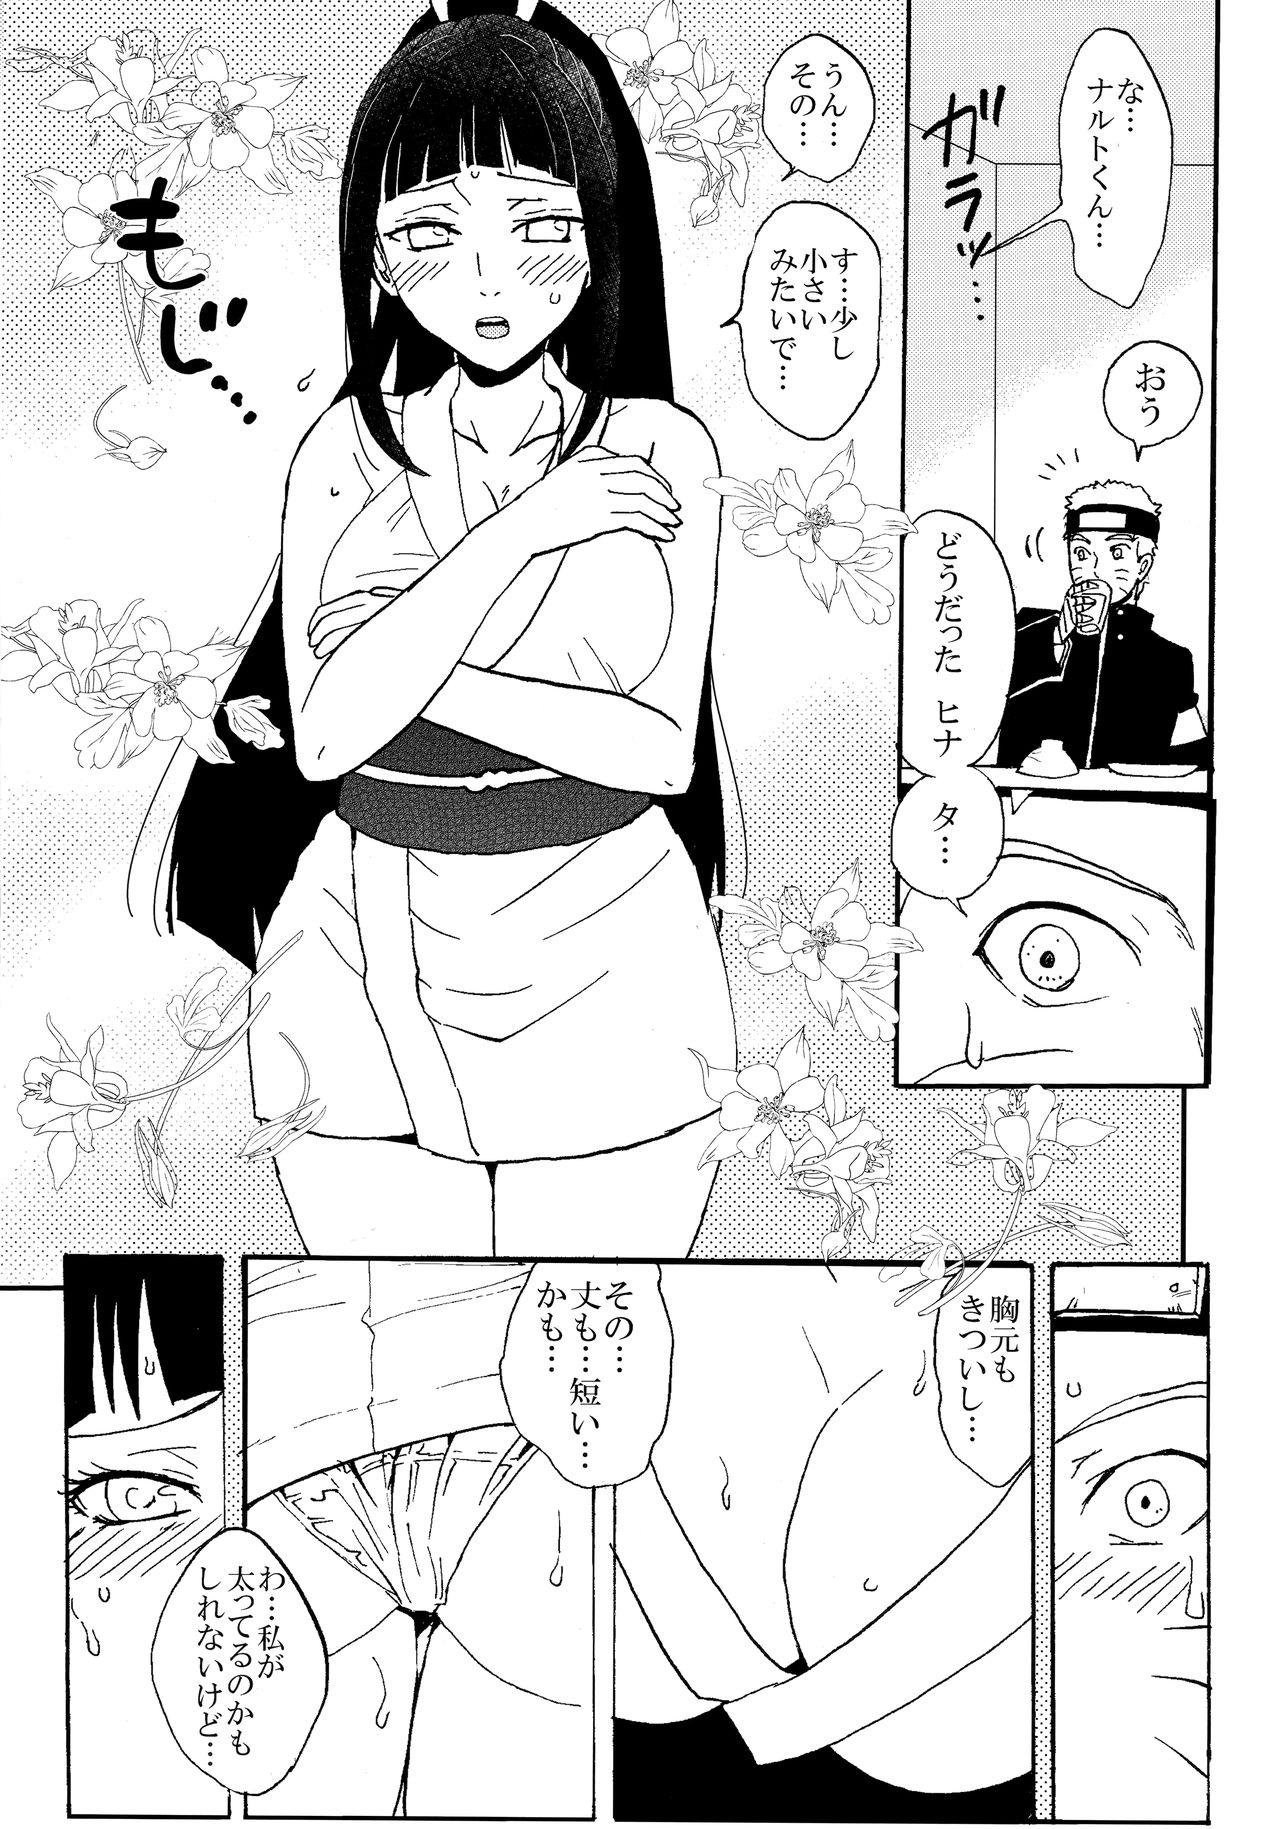 Home Shinkon Hinata no Kunoichi Cosplay datteba yo! - Naruto Club - Page 4